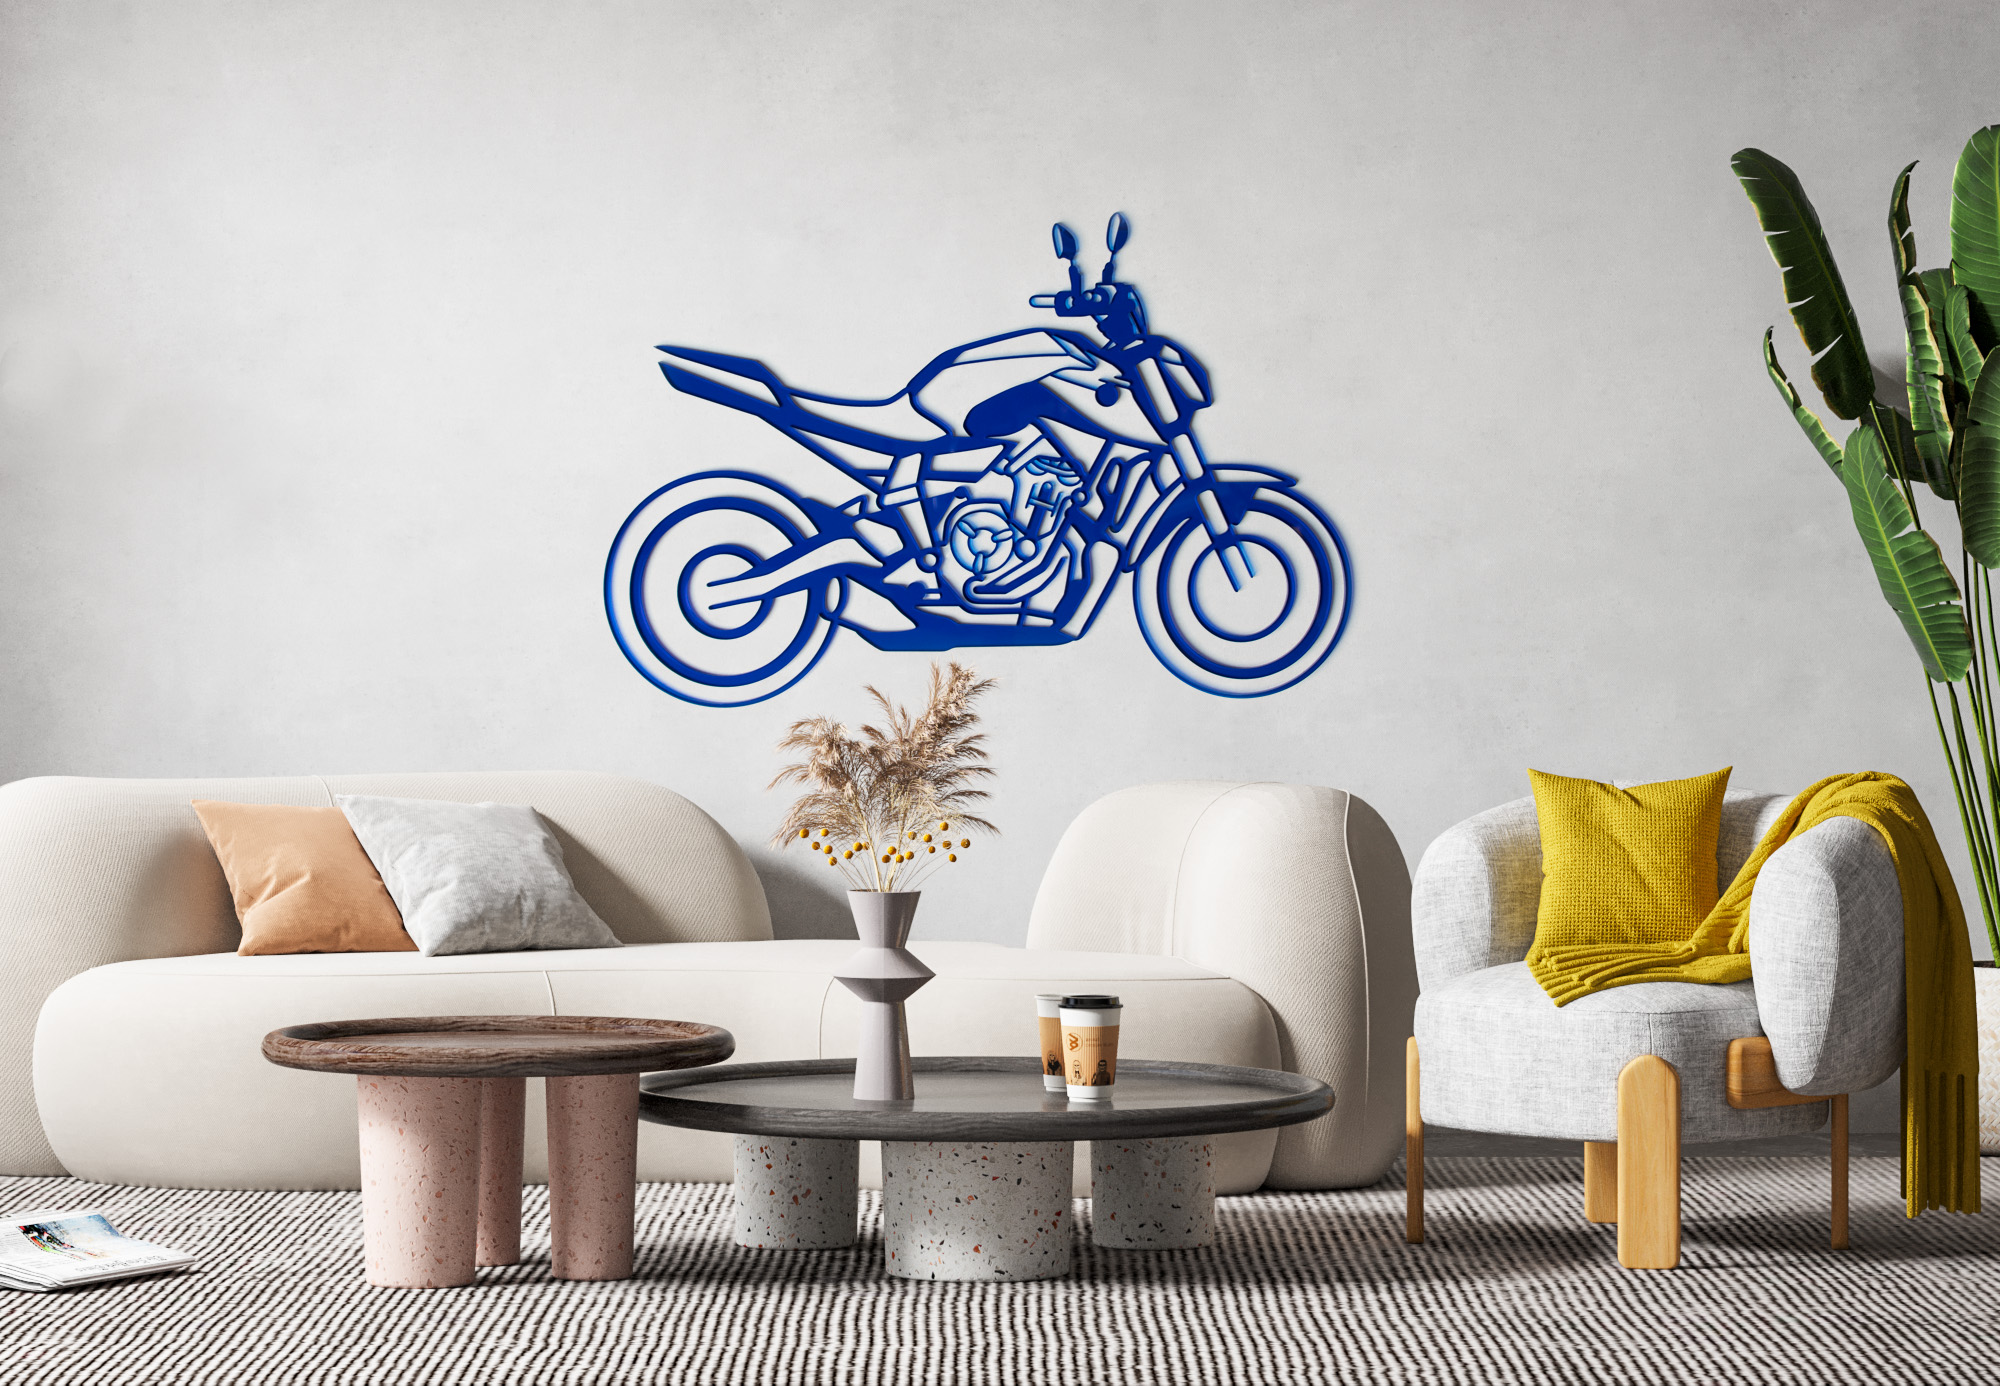 Décorations murales moto Ermax-design par zébra design